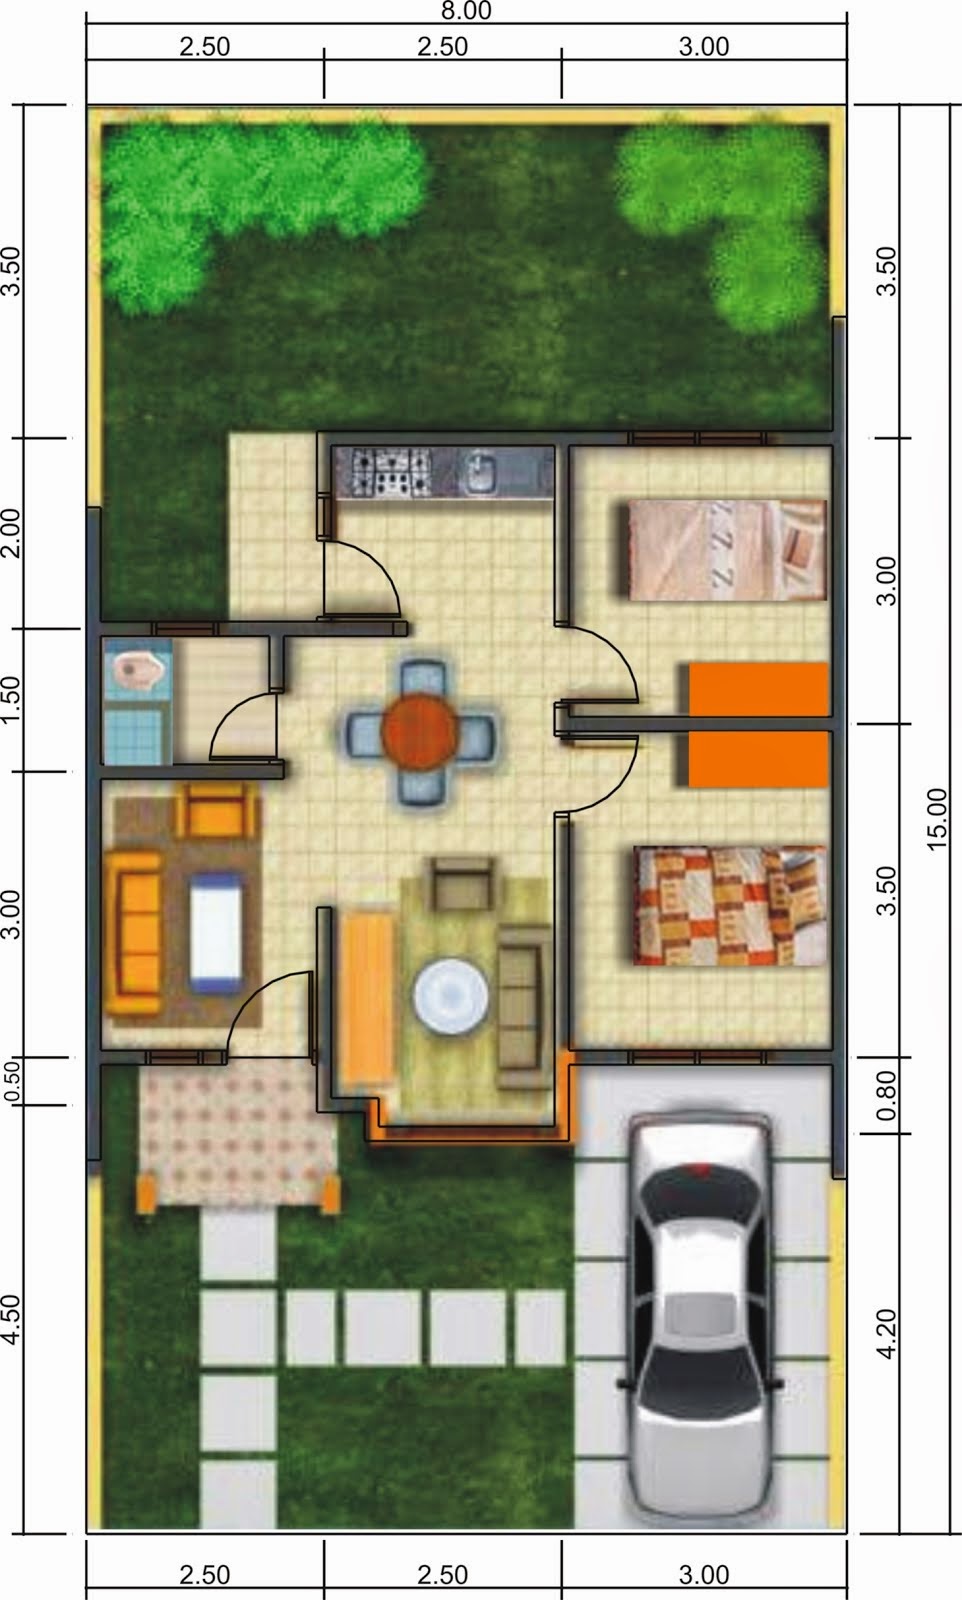 Gambar Denah Rumah Minimalis 1 Lantai Modern | Desain Denah Rumah ...